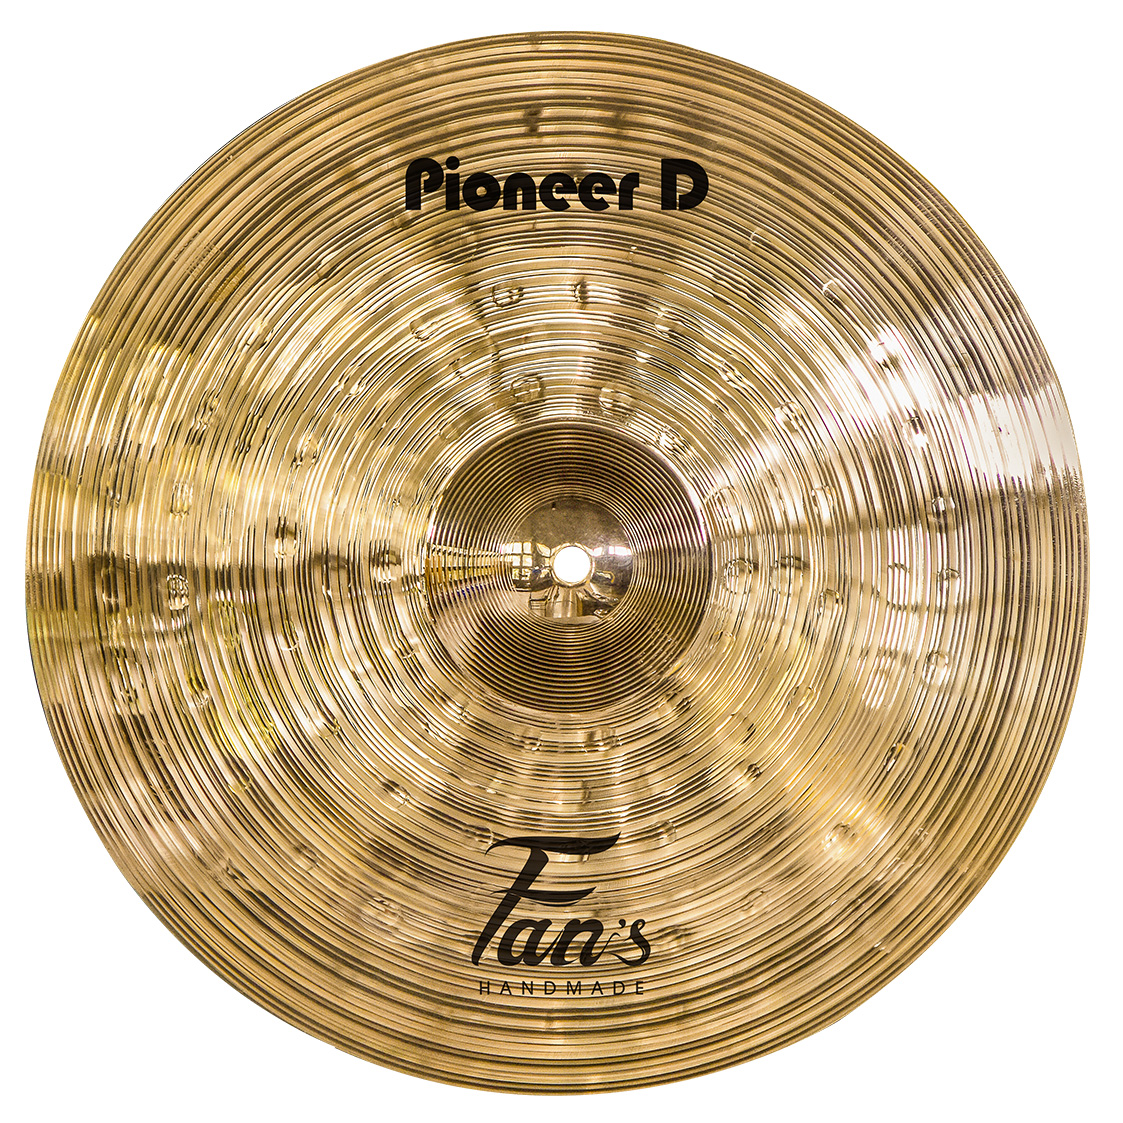 Pioneer D